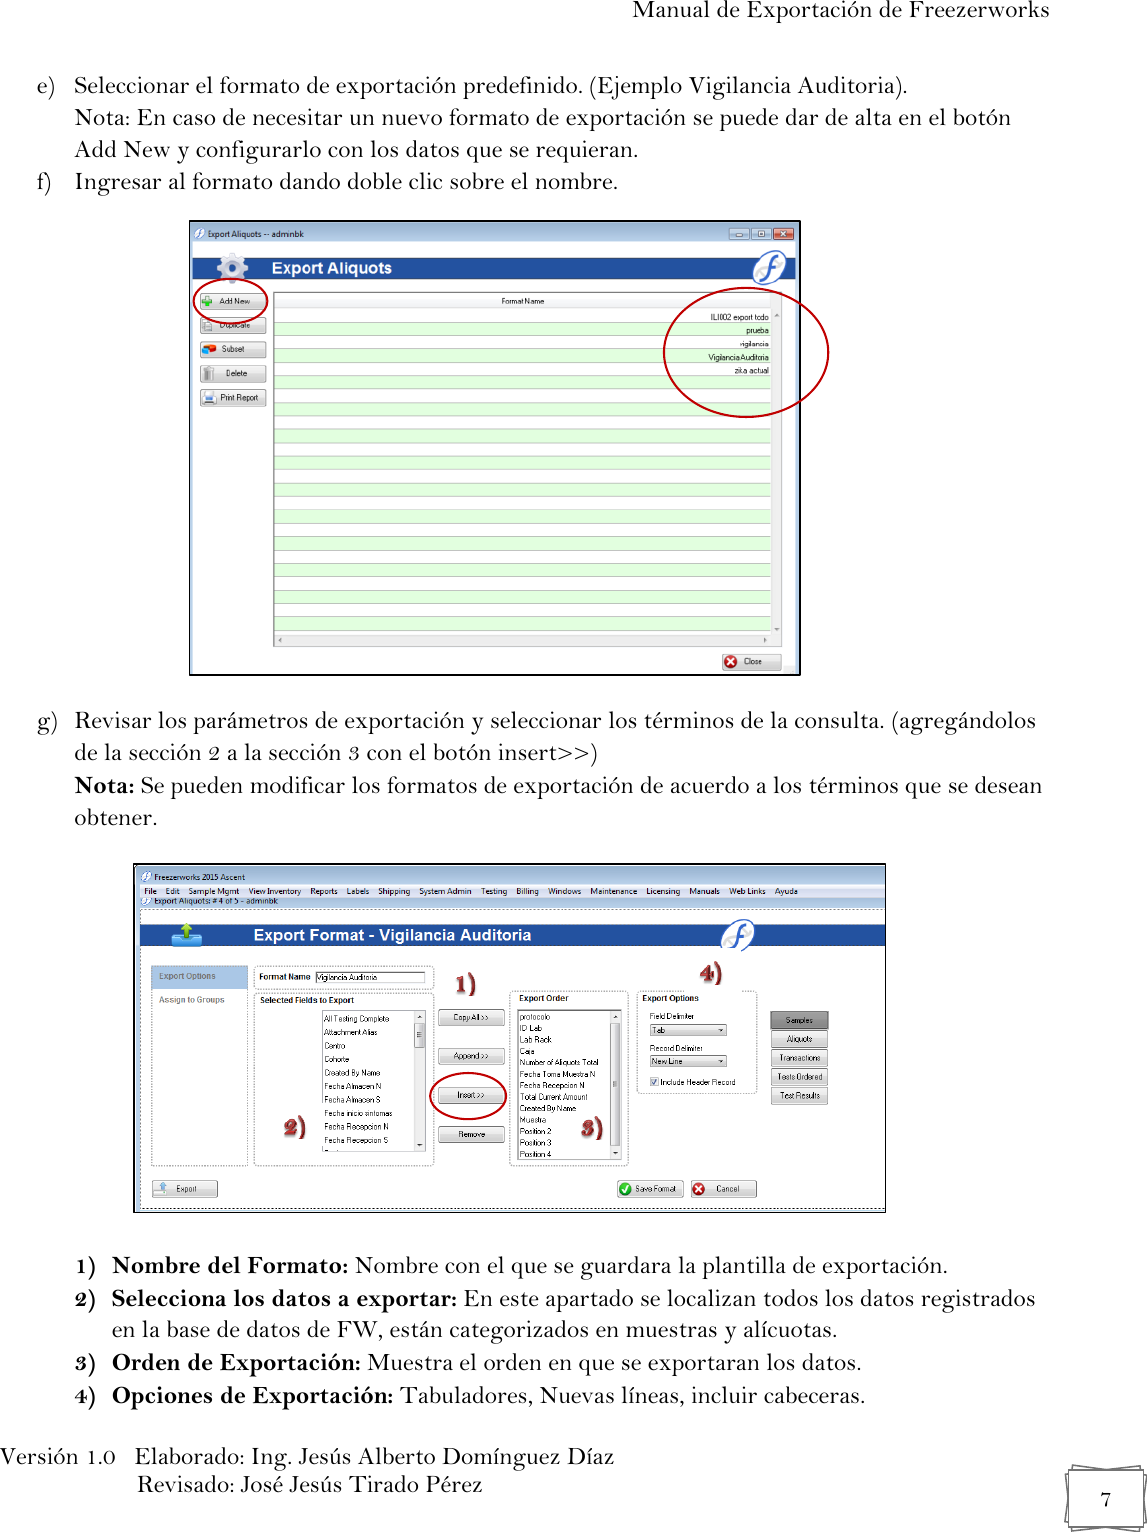 Page 7 of 11 - Manual 03 Exportación De Bases Datos Del Freezerworks